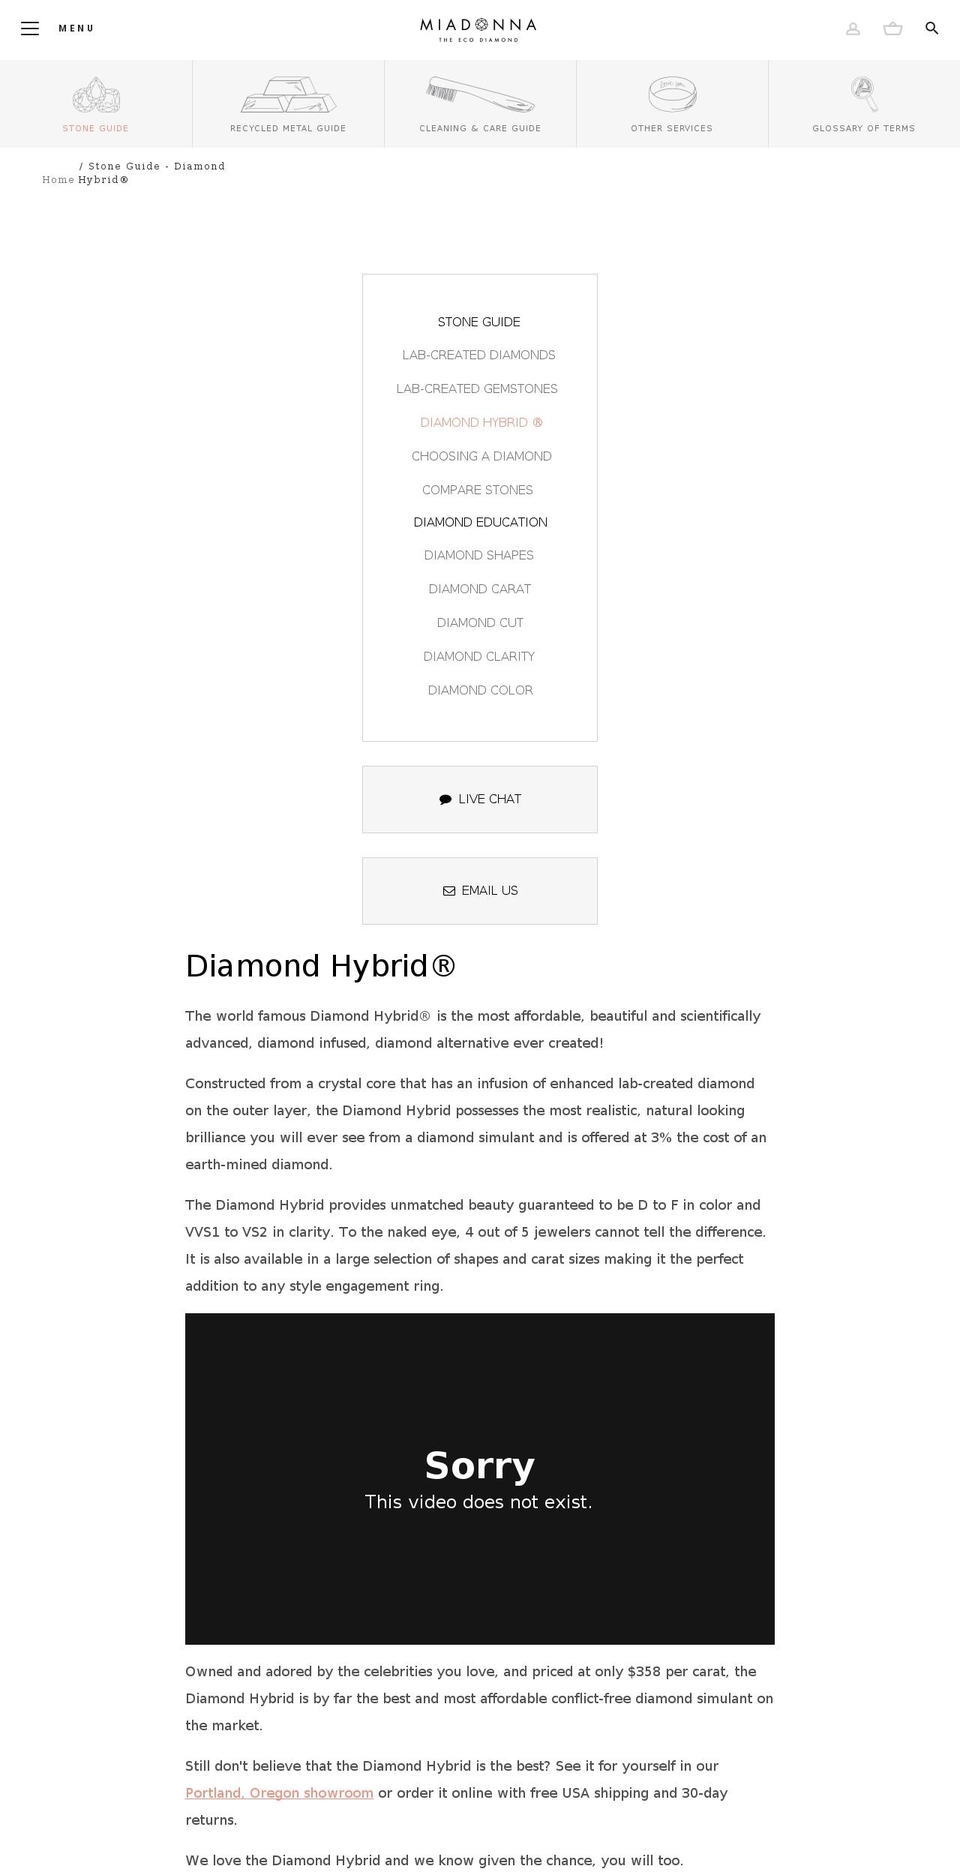 diamondhybrids.com shopify website screenshot